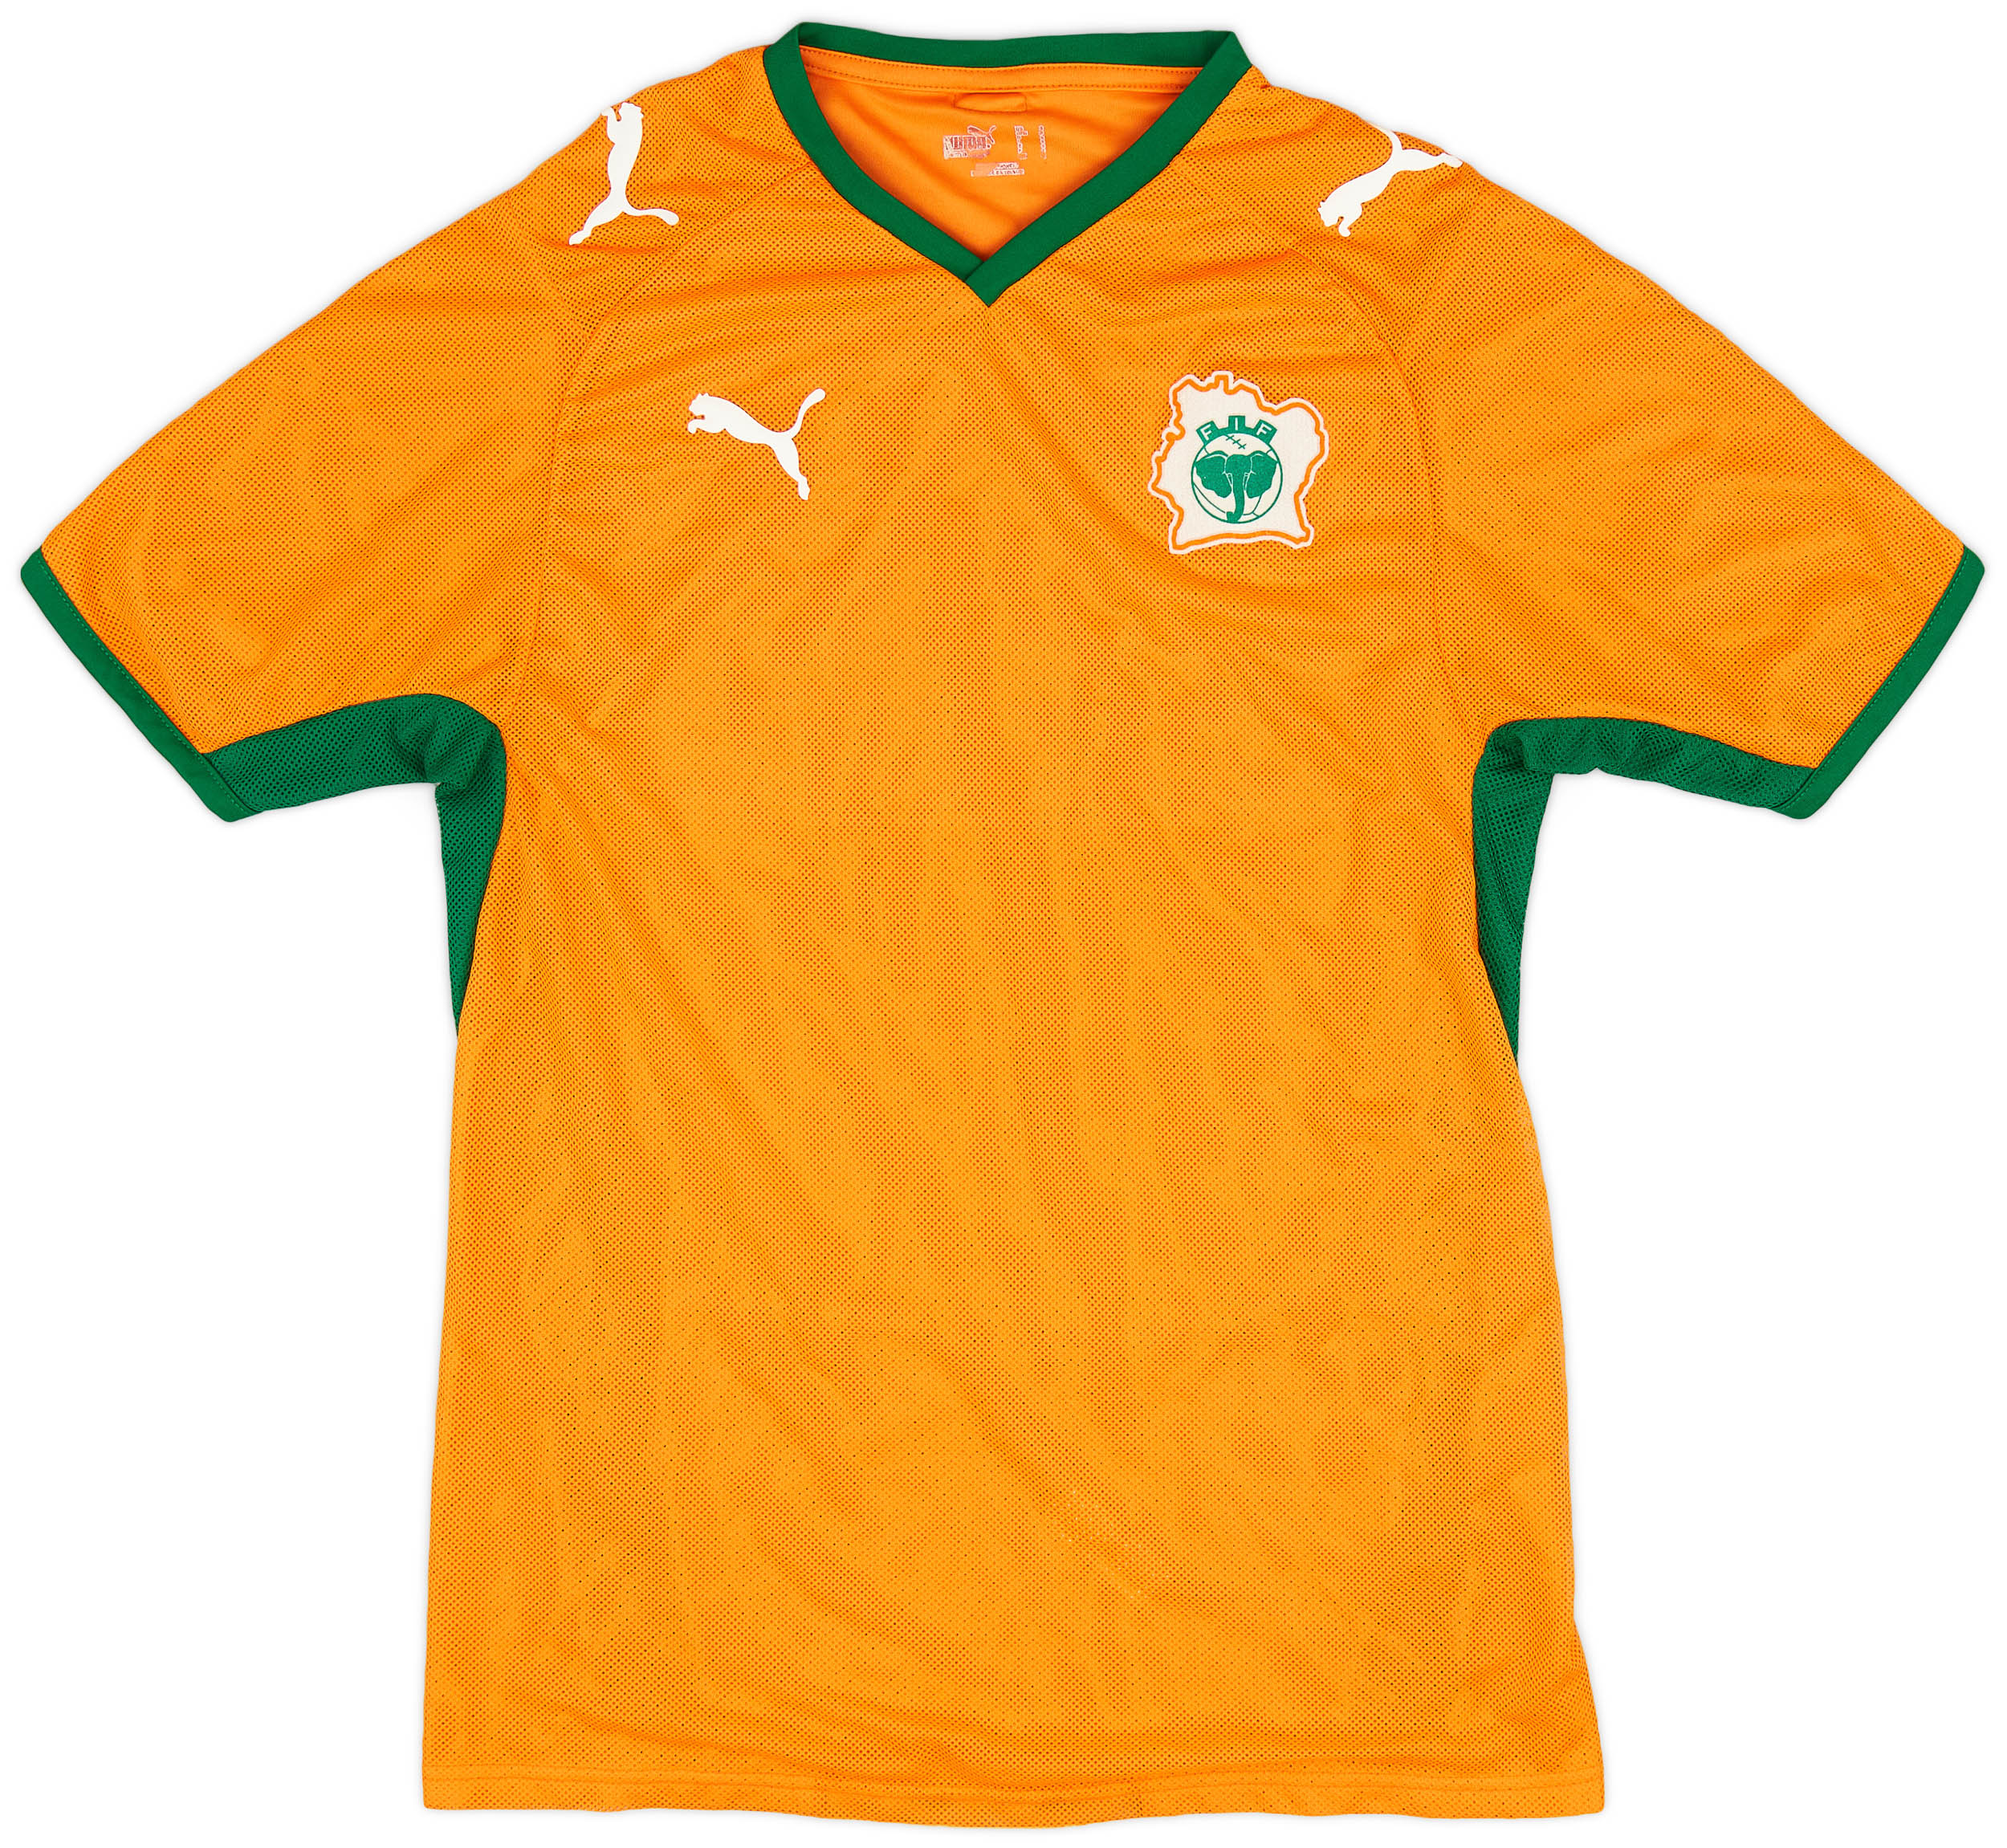 Côte d'Ivoire  home camisa (Original)